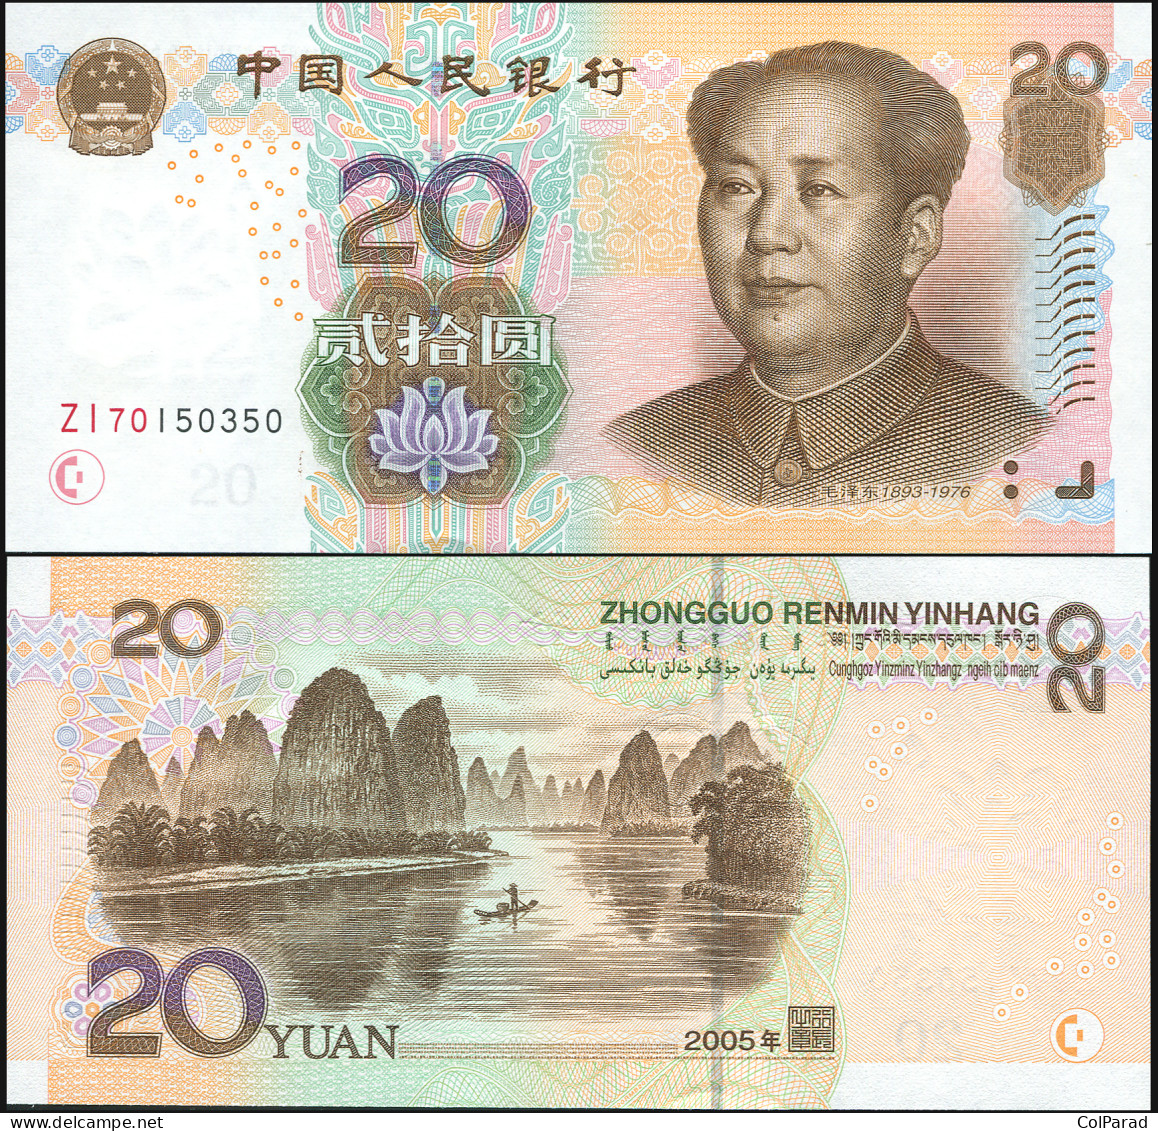 CHINA 20 YUAN - 2005 - Unc - P.905a Paper Banknote - China